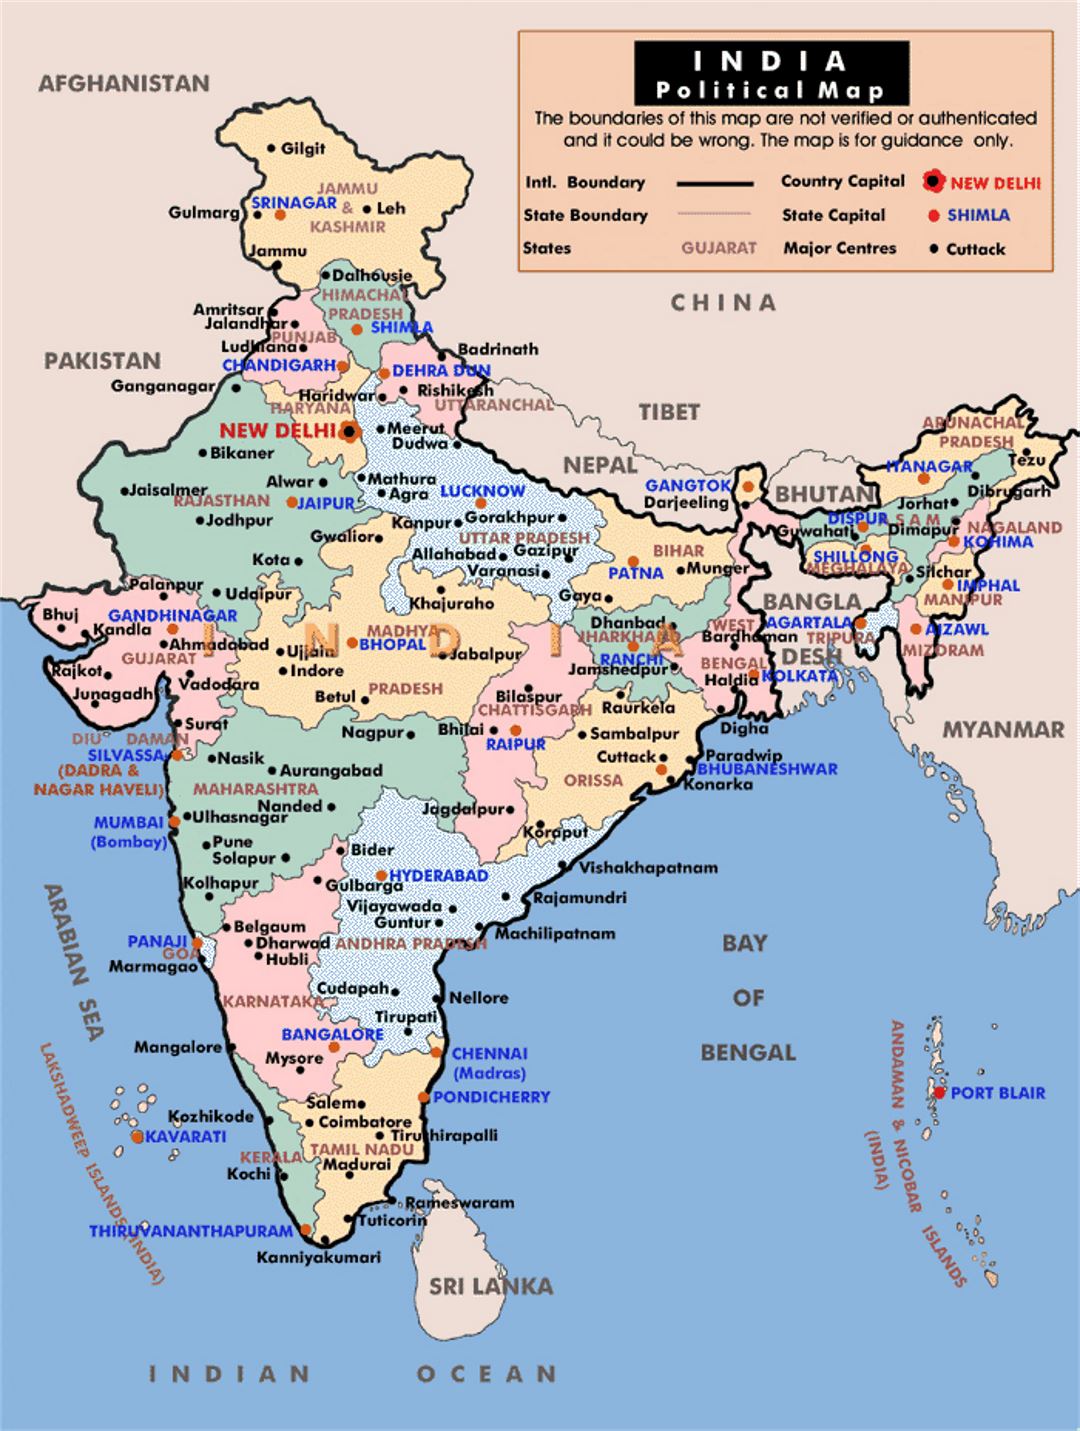 Mapa político y administrativo de la India